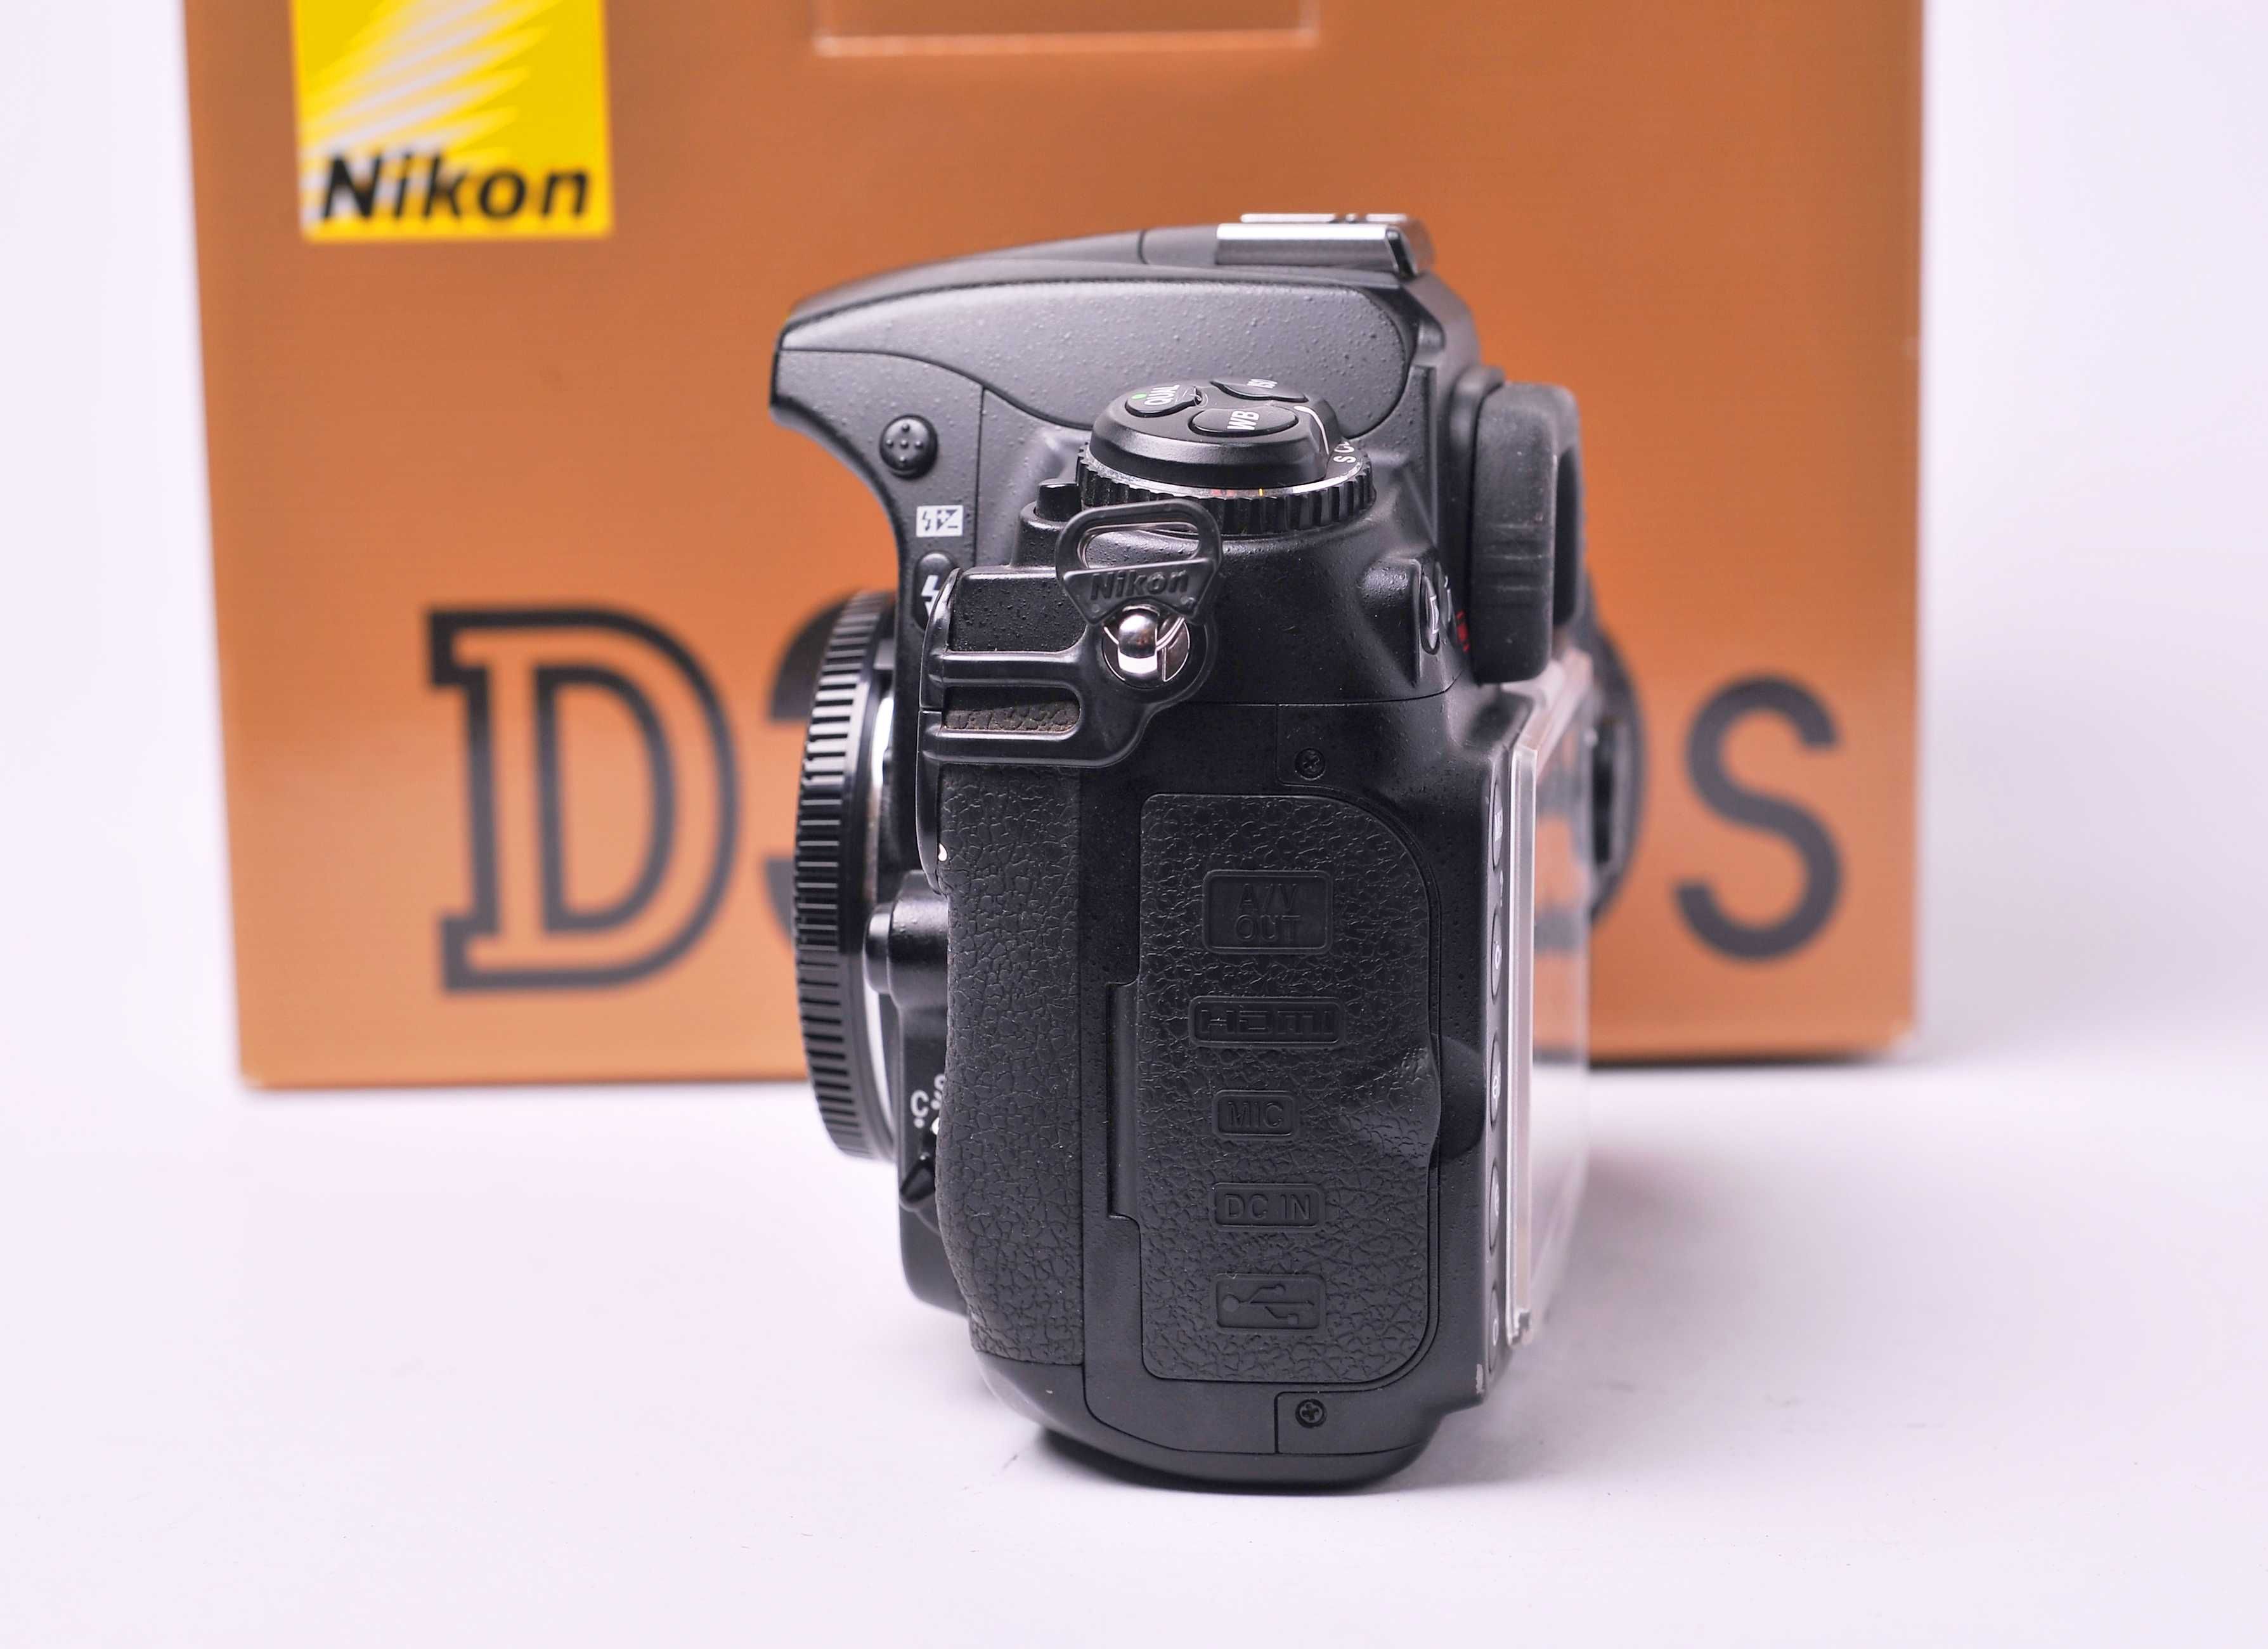 Nikon D300s seminova (10500 disparos) NOVO PREÇO